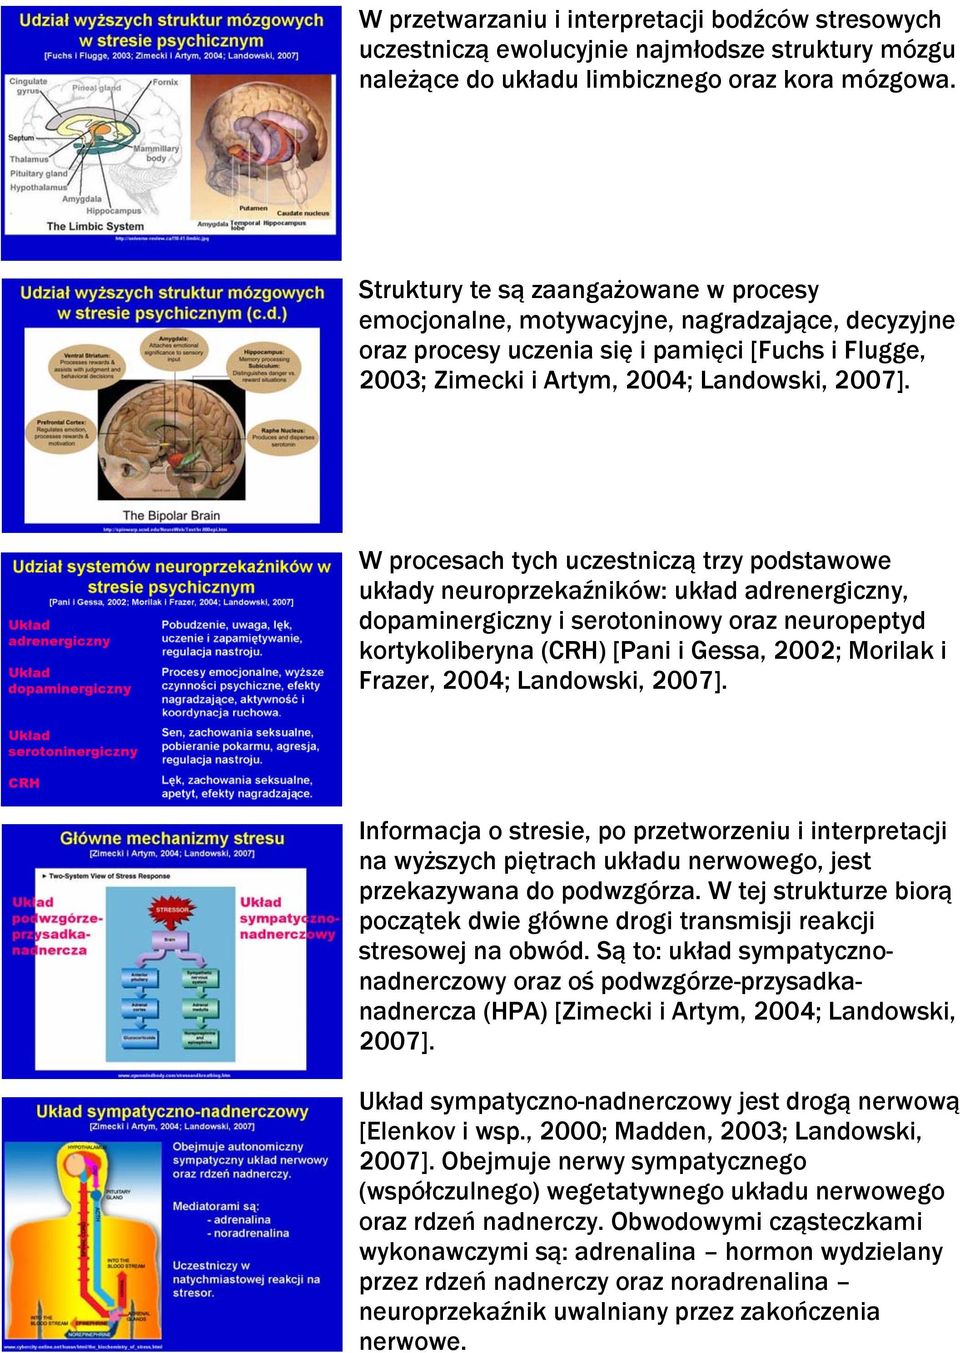 W procesach tych uczestniczą trzy podstawowe układy neuroprzekaźników: układ adrenergiczny, dopaminergiczny i serotoninowy oraz neuropeptyd kortykoliberyna (CRH) [Pani i Gessa, 2002; Morilak i